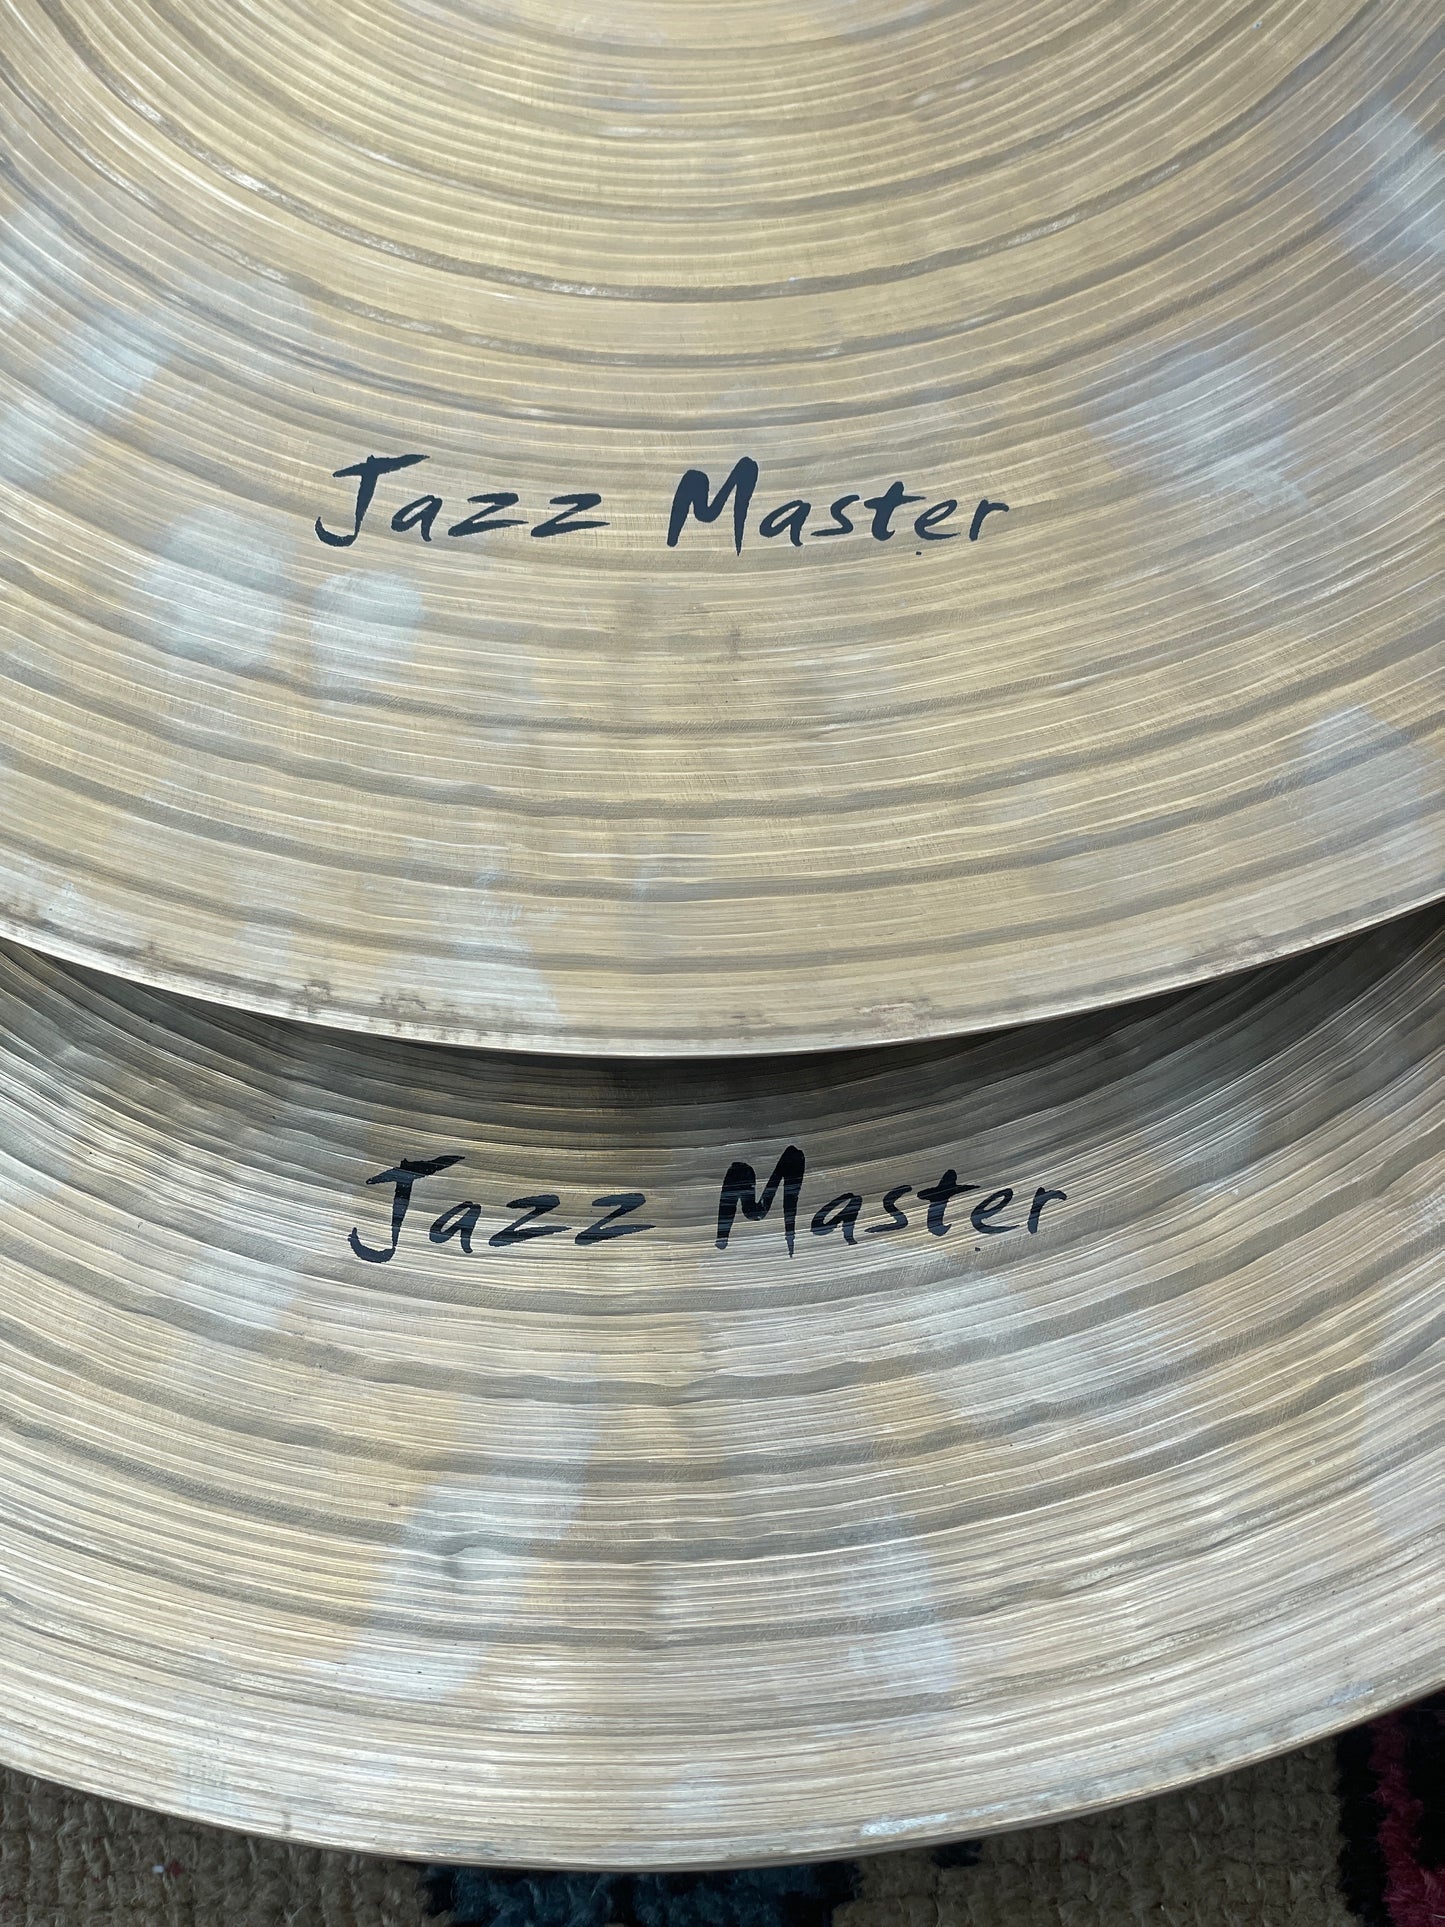 14" Masterwork Jazz Master Hi-Hat Cymbal Pair 1024g/1156g *Video Demo*